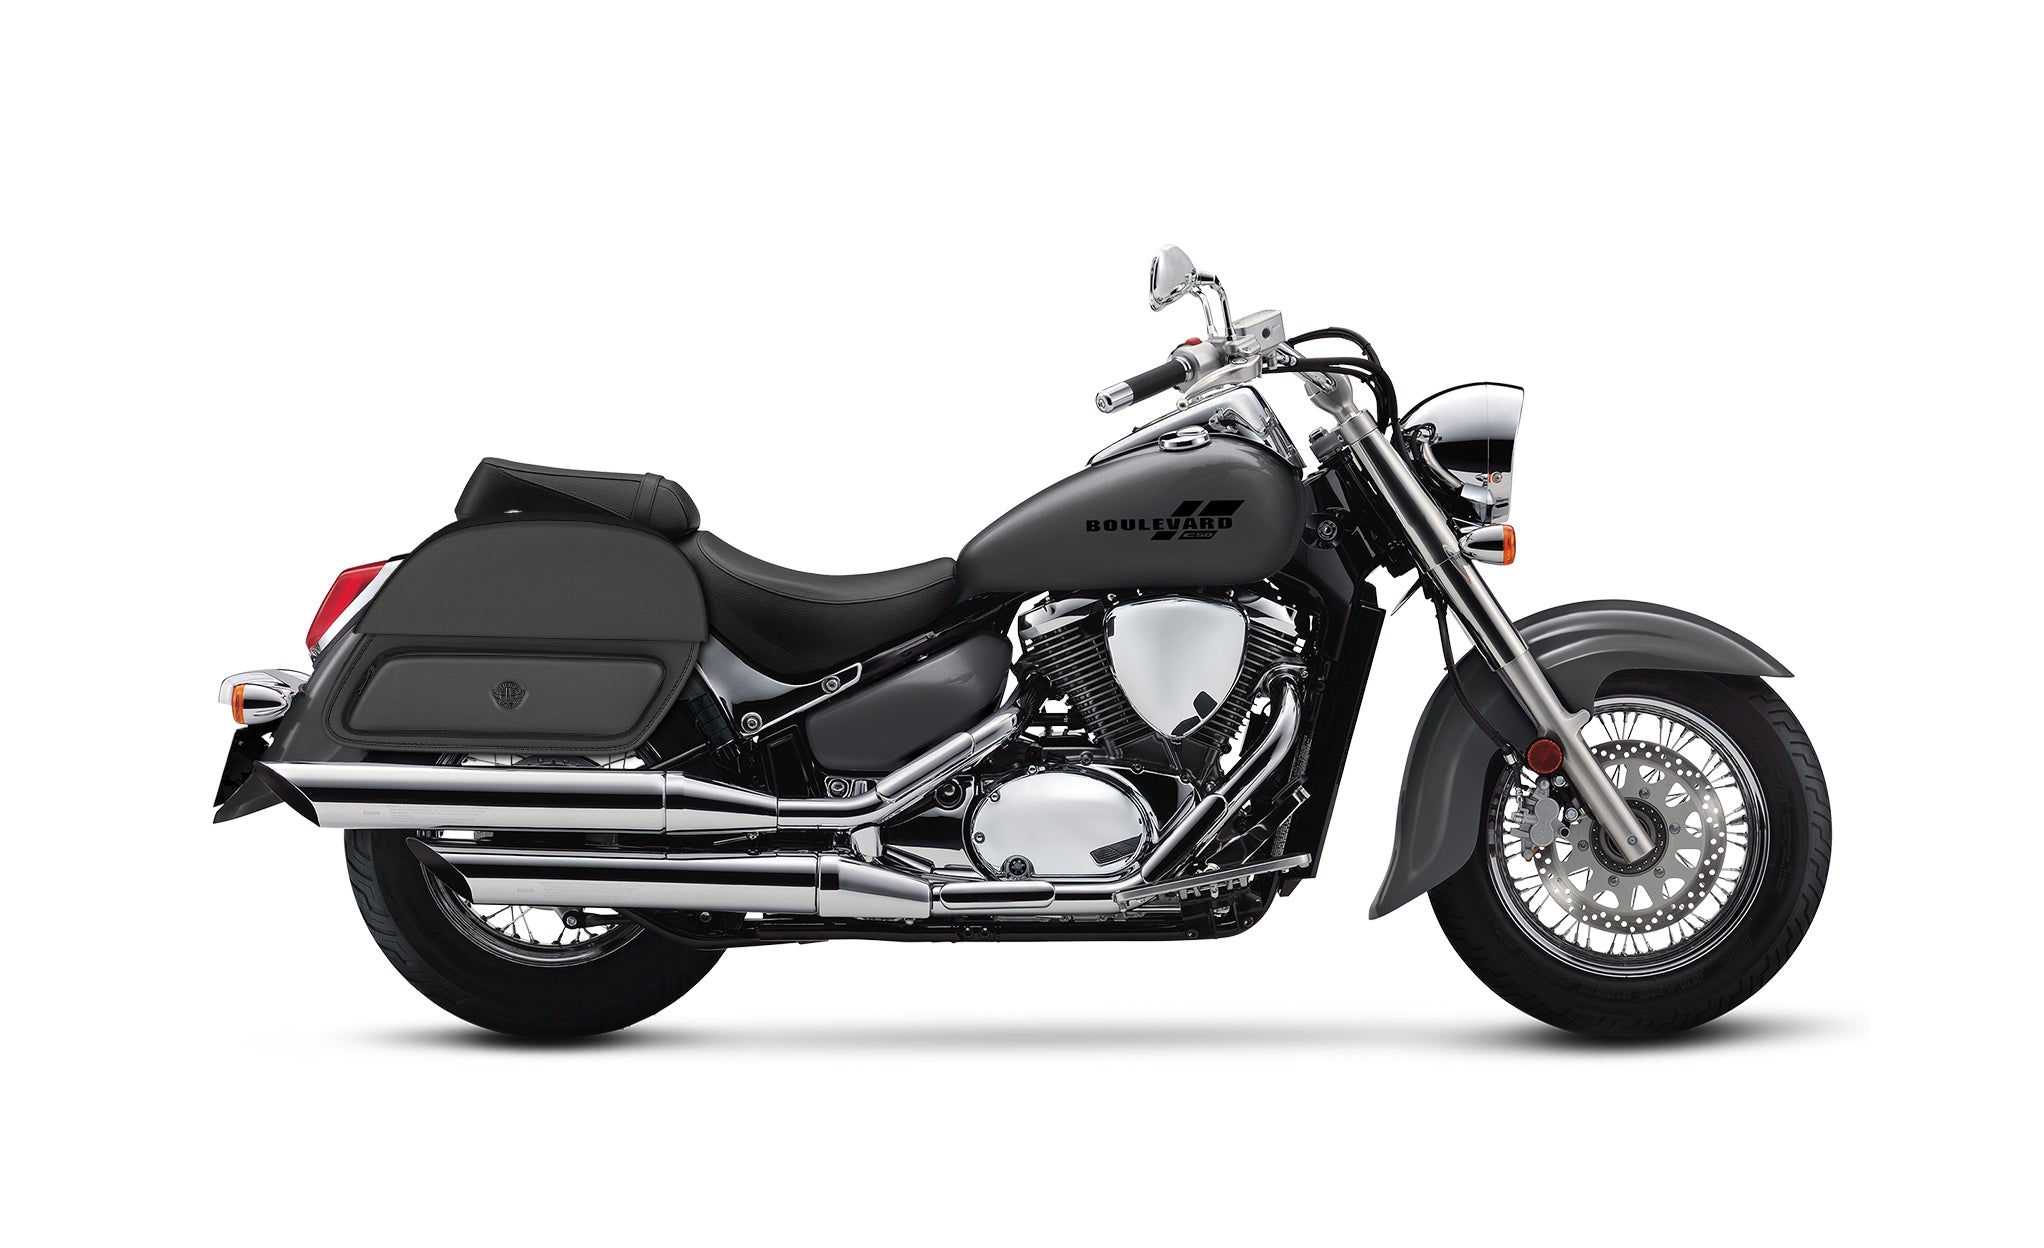 33L - Pantheon Large Suzuki Boulevard C50 VL800 Motorcycle Saddlebags @expand